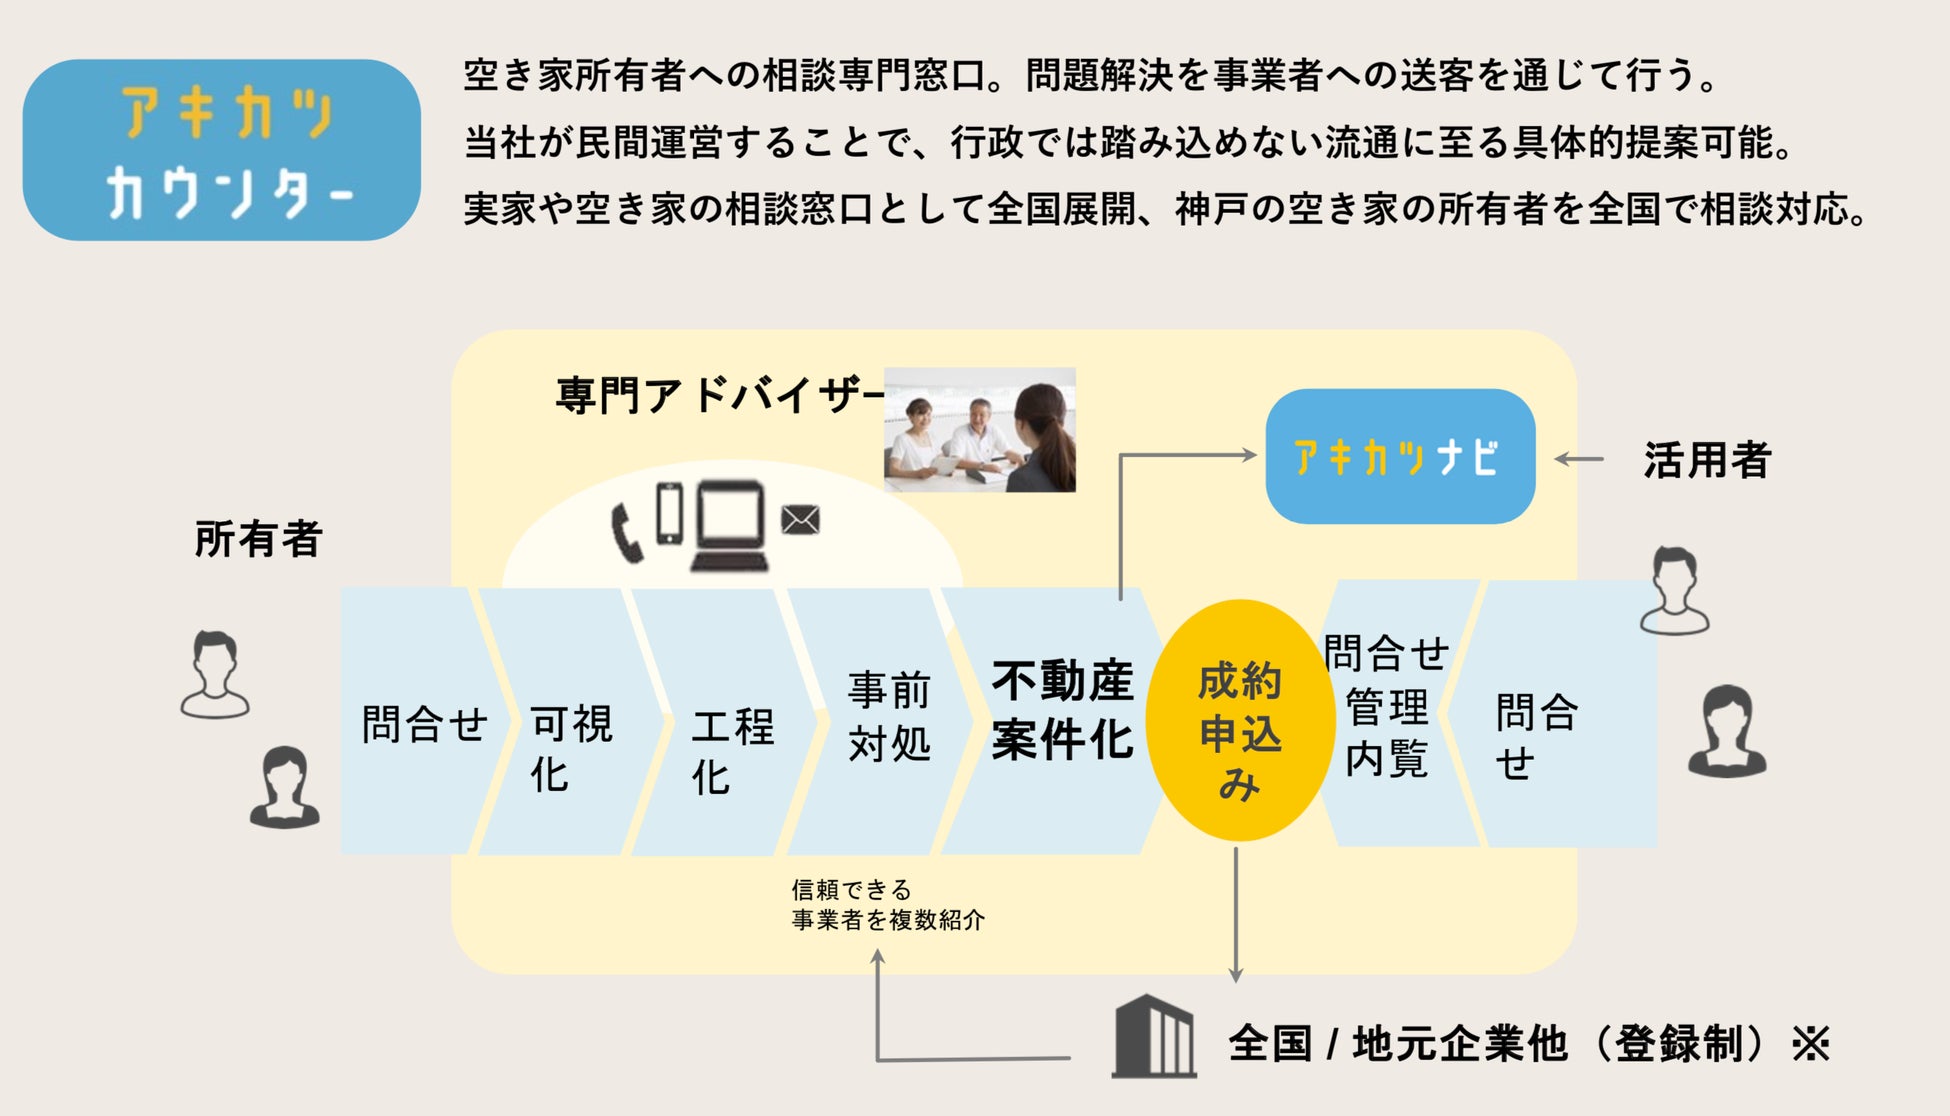 神戸市と空き家活用株式会社　空き家対策に関する連携協定を締結。相談窓口の「アキカツカウンター」と空き家情報流通サービスの「アキカツナビ」を神戸市にて事業展開へのサブ画像7